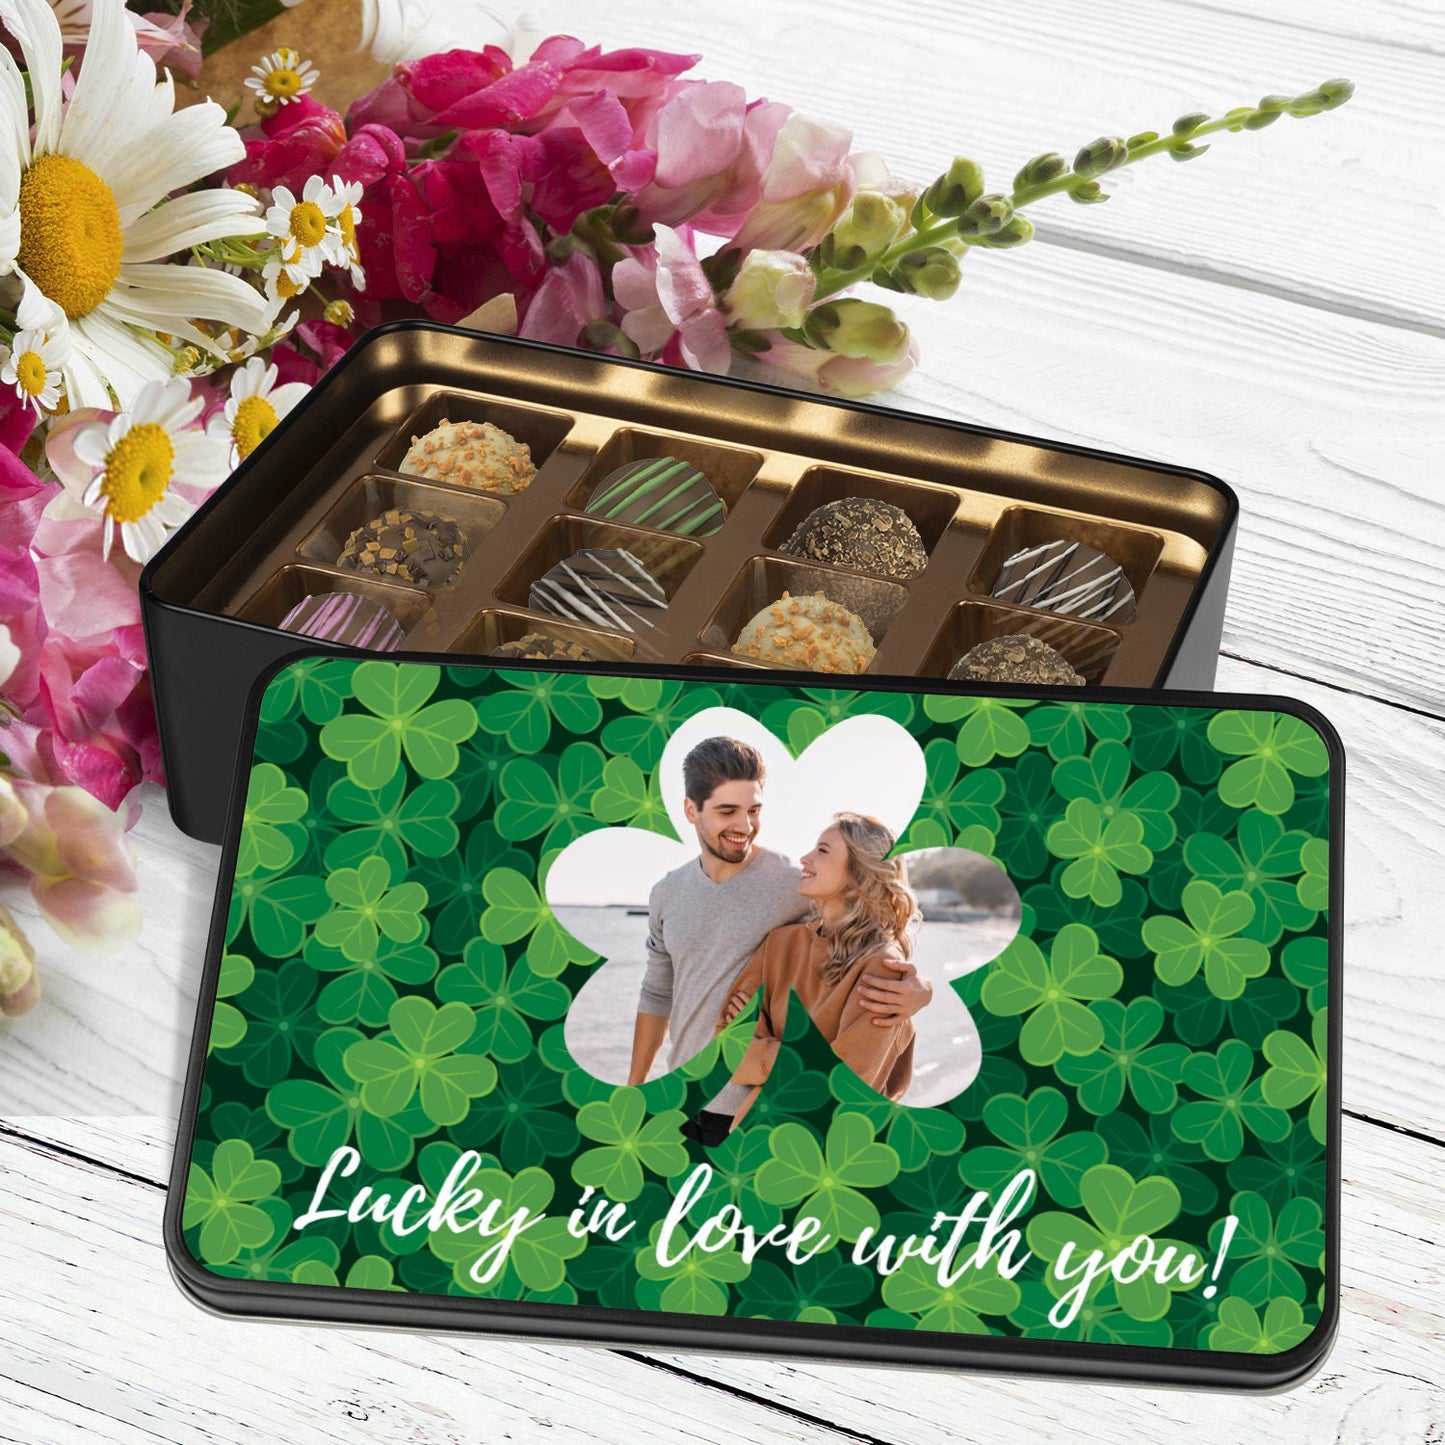 Personalized St. Patricks Day Chocolate Truffles, Custom Photo Chocolate Box, Irish Gifts for Her, Irish Gifts for Men, Saint Patricks Day